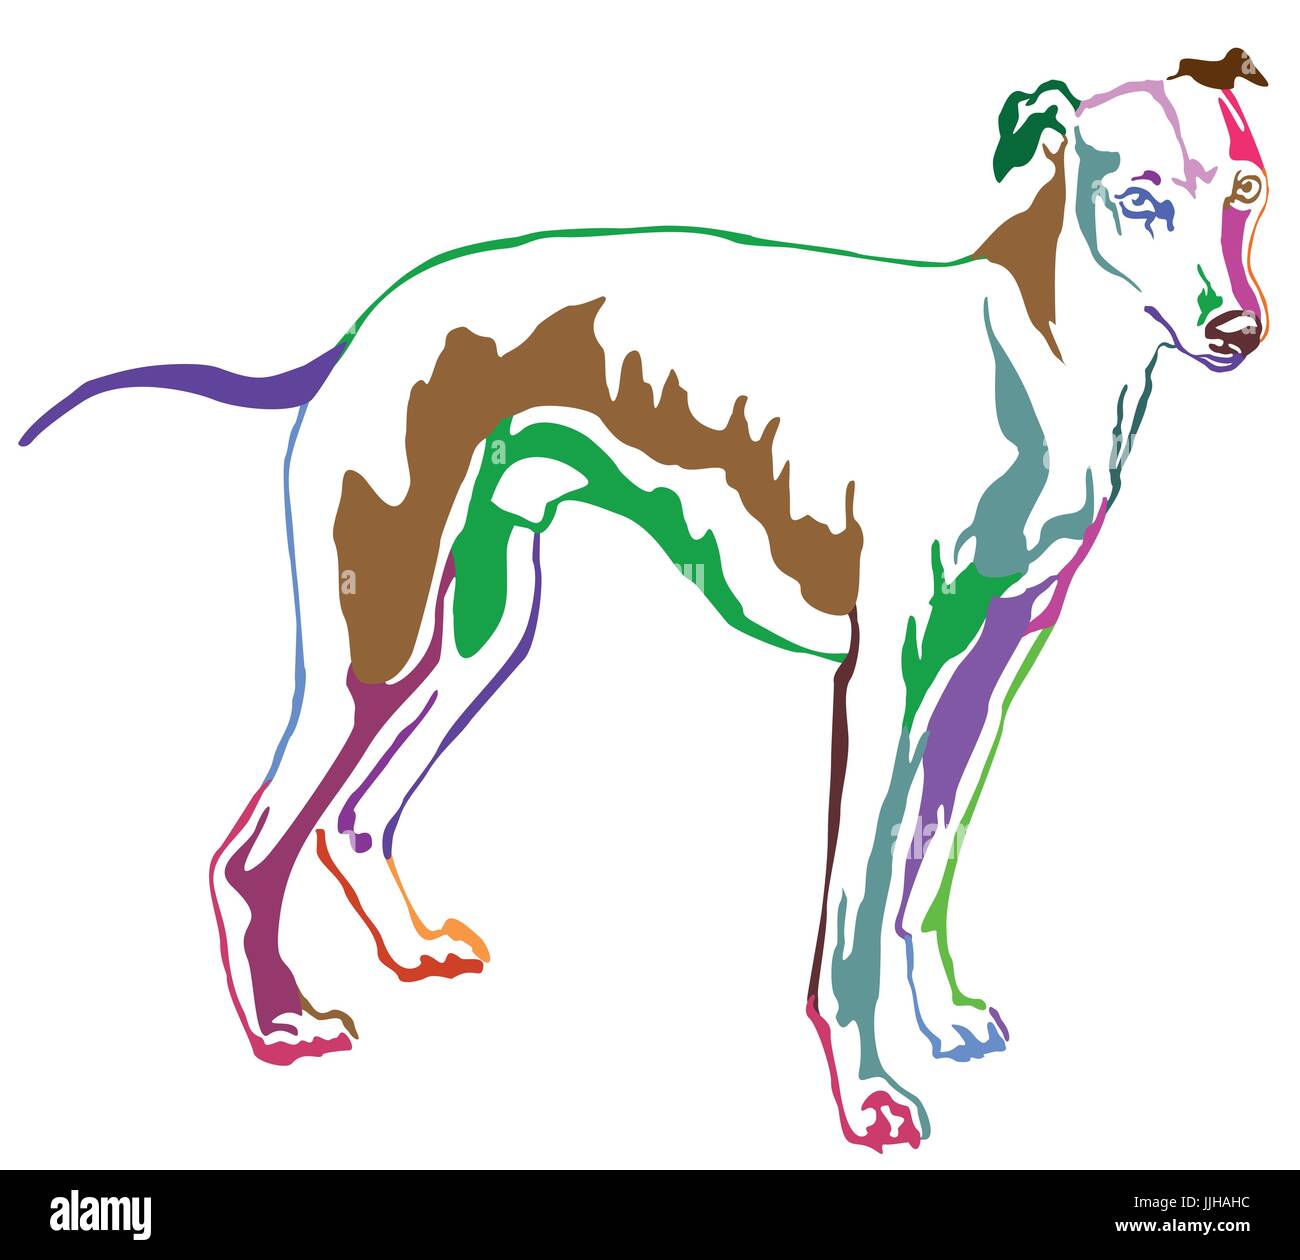 Dekoratives Porträt von stehen im Profil Hund Whippet (Anblick Bracke), Vektor-isolierte Illustration in Regenbogenfarben auf weißem Hintergrund Stock Vektor